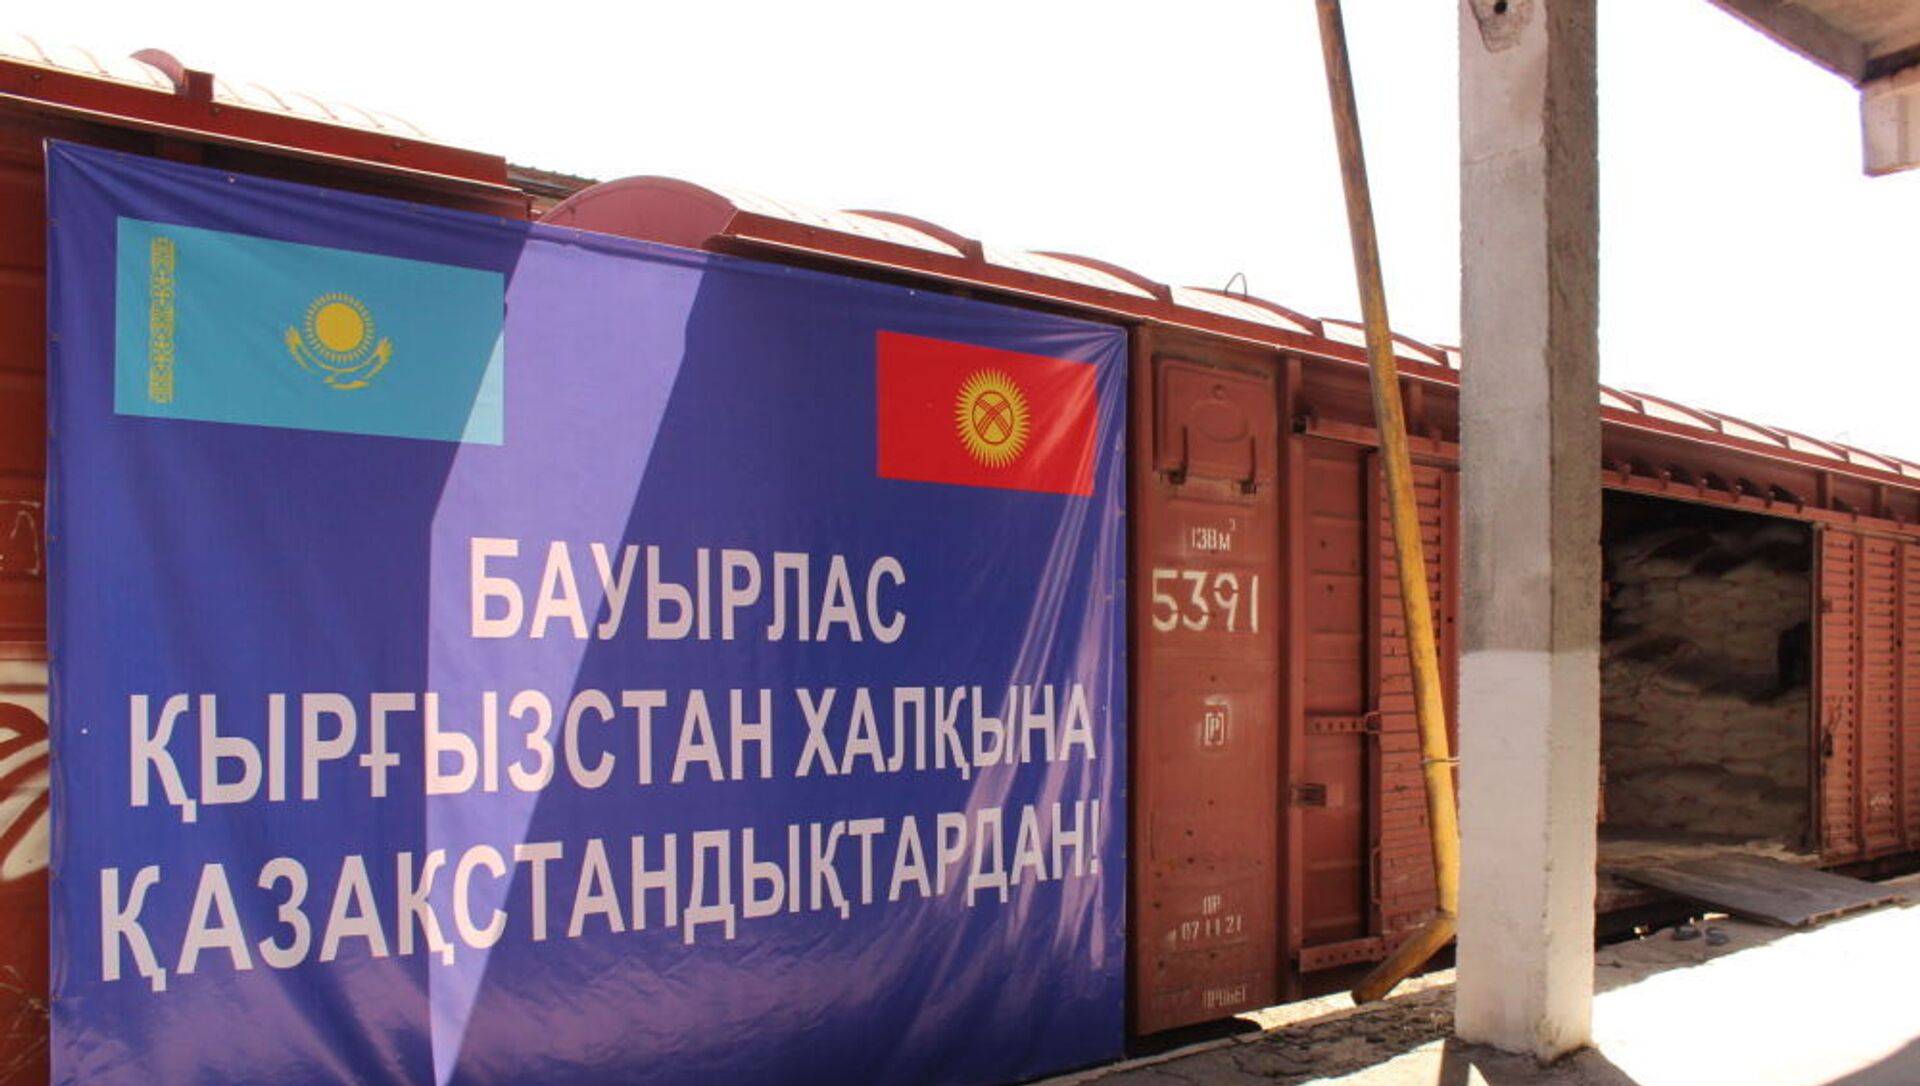 Вагоны с гуманитарной помощью из Казахстана прибыли в Бишкек - Sputnik Қазақстан, 1920, 29.06.2021